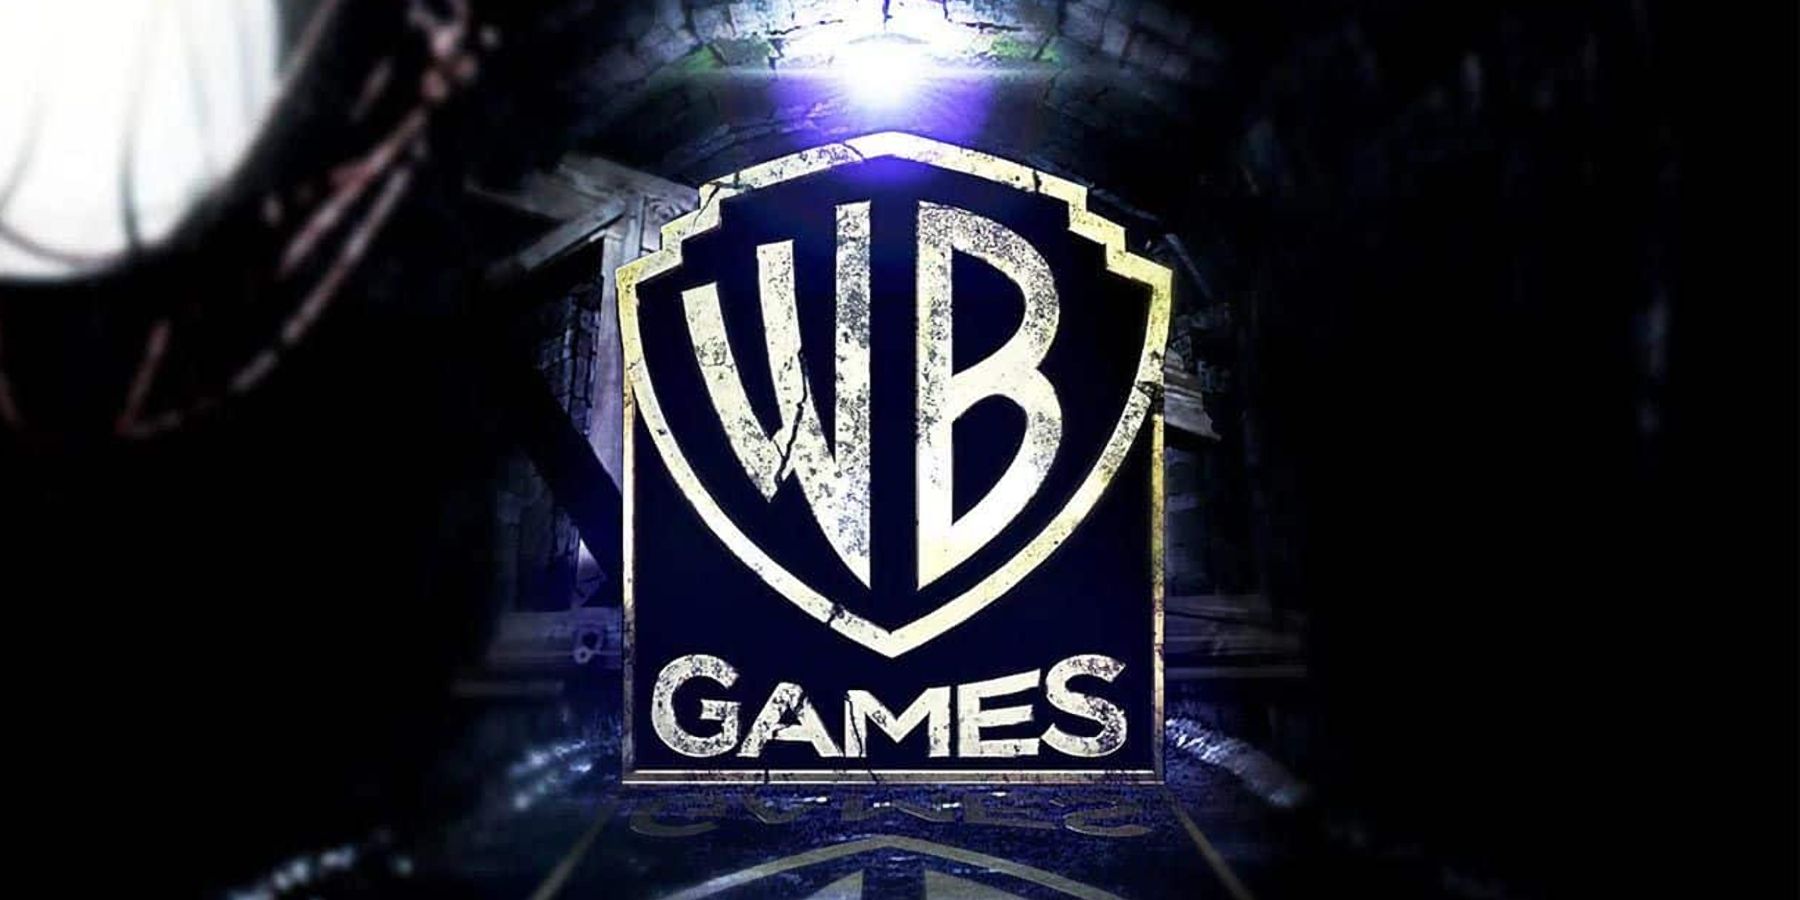 WB Games deve ser administrada pela Warner Bros. Discovery 